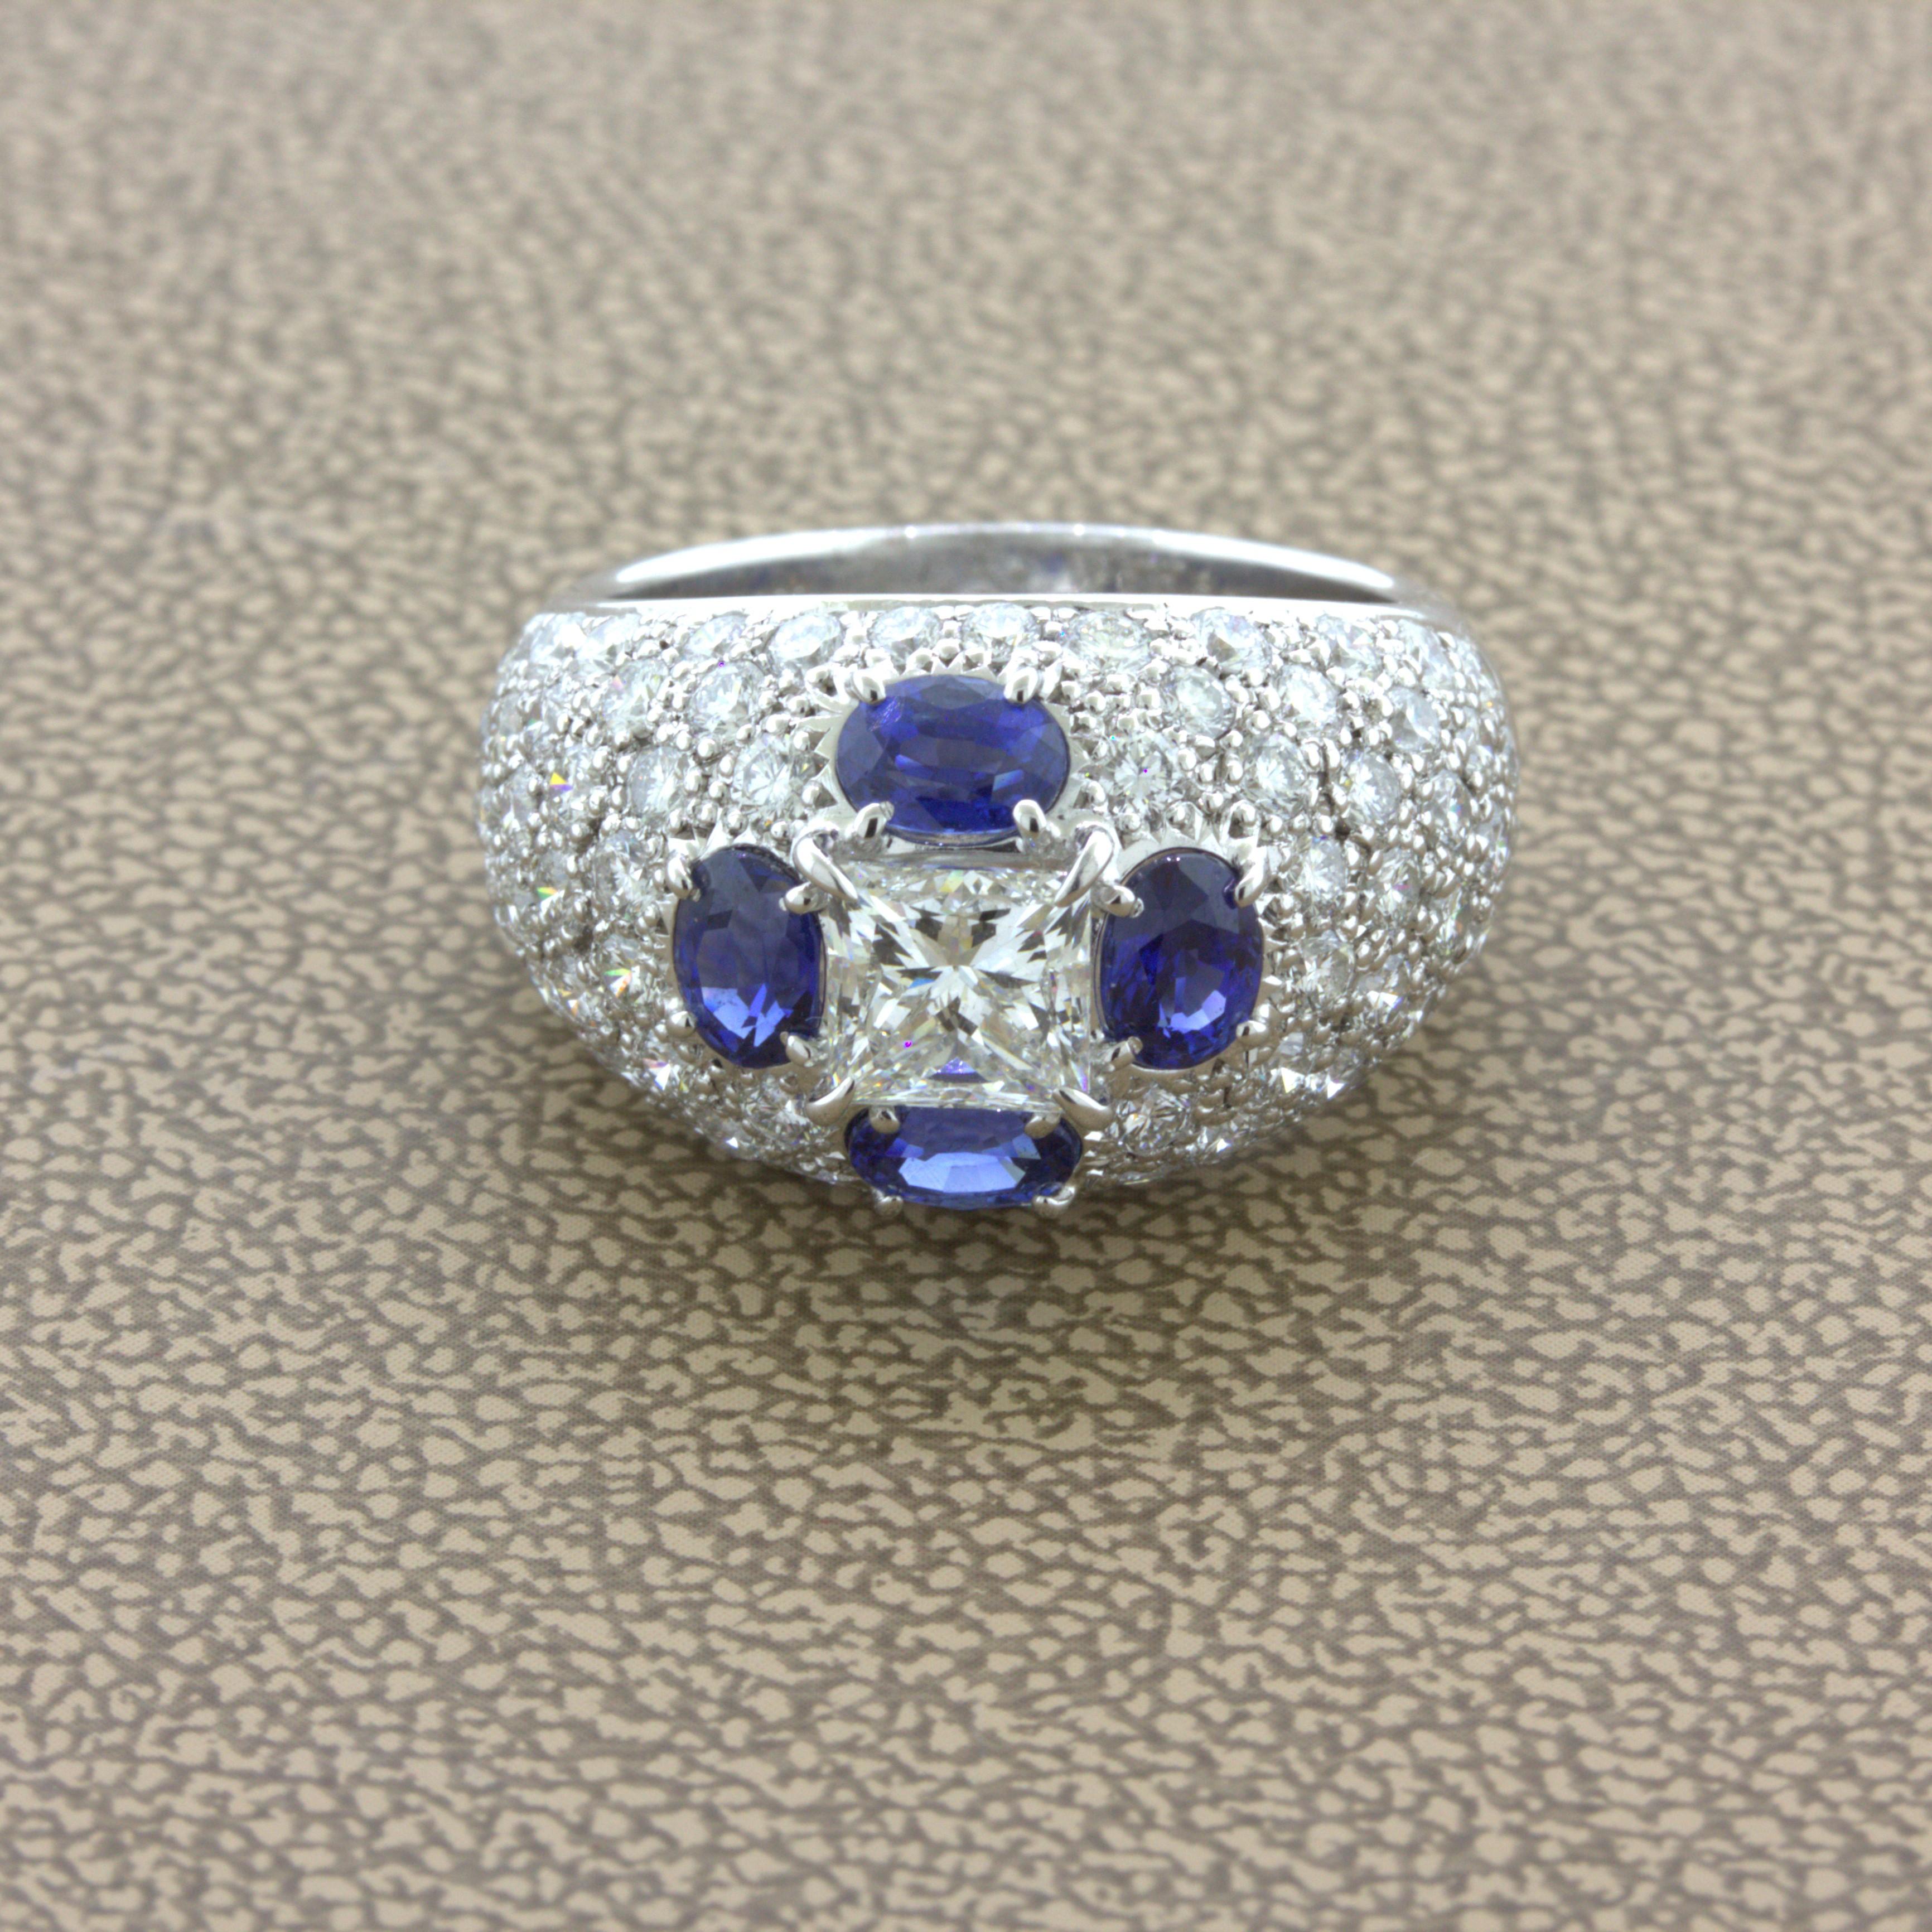 Ein schicker und eleganter Platinring mit einem Diamanten im Prinzessinnenschliff von 1,02 Karat! Er hat eine Farbe von G-H und ist augenrein ohne sichtbare Einschlüsse, ein Stein von sehr guter Qualität. Er wird ergänzt durch 4 ovale blaue Saphire